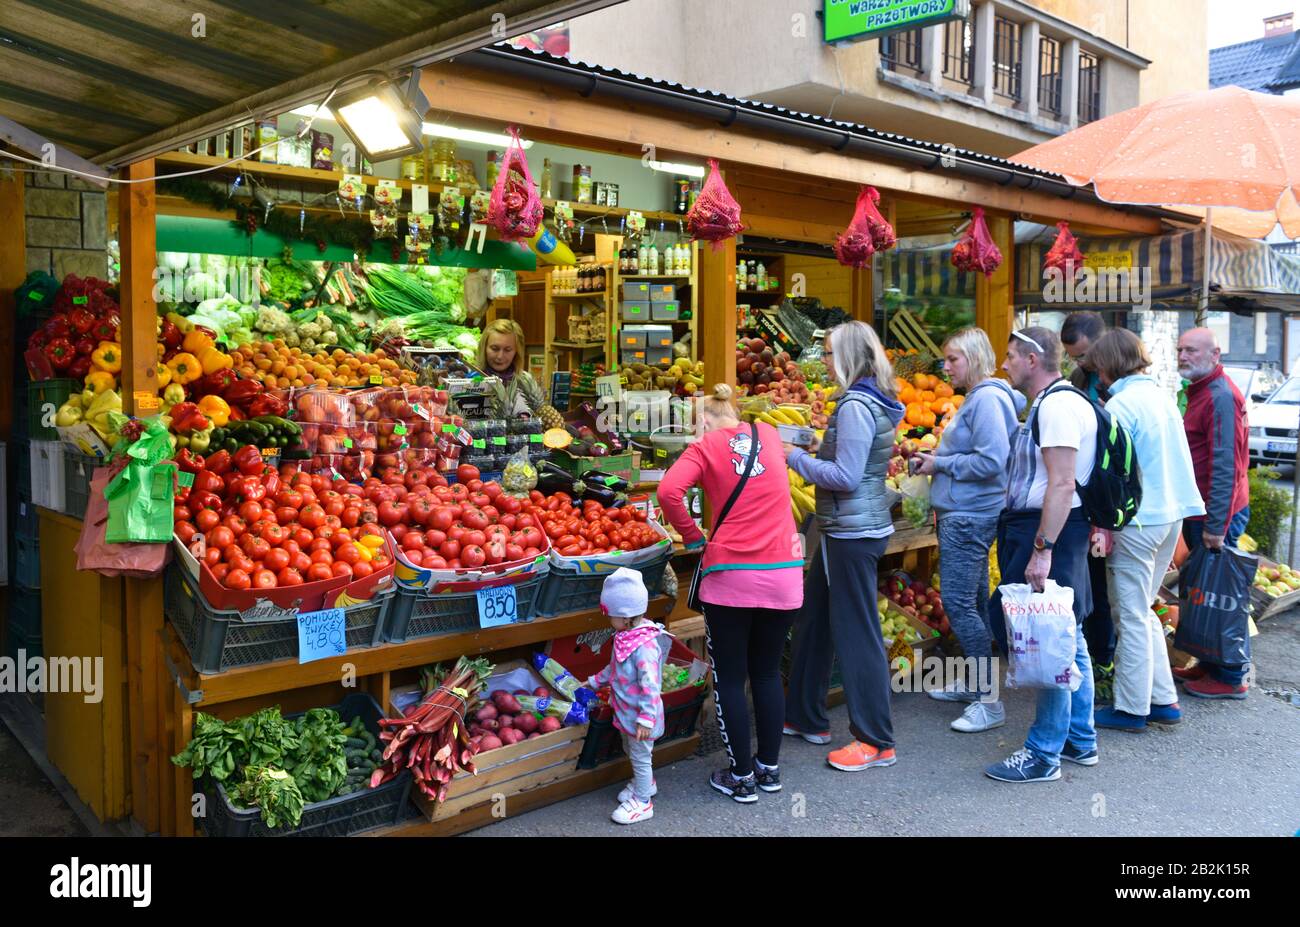 Obst und Gemuese, Verkauf, Zakopane, Polen Foto Stock